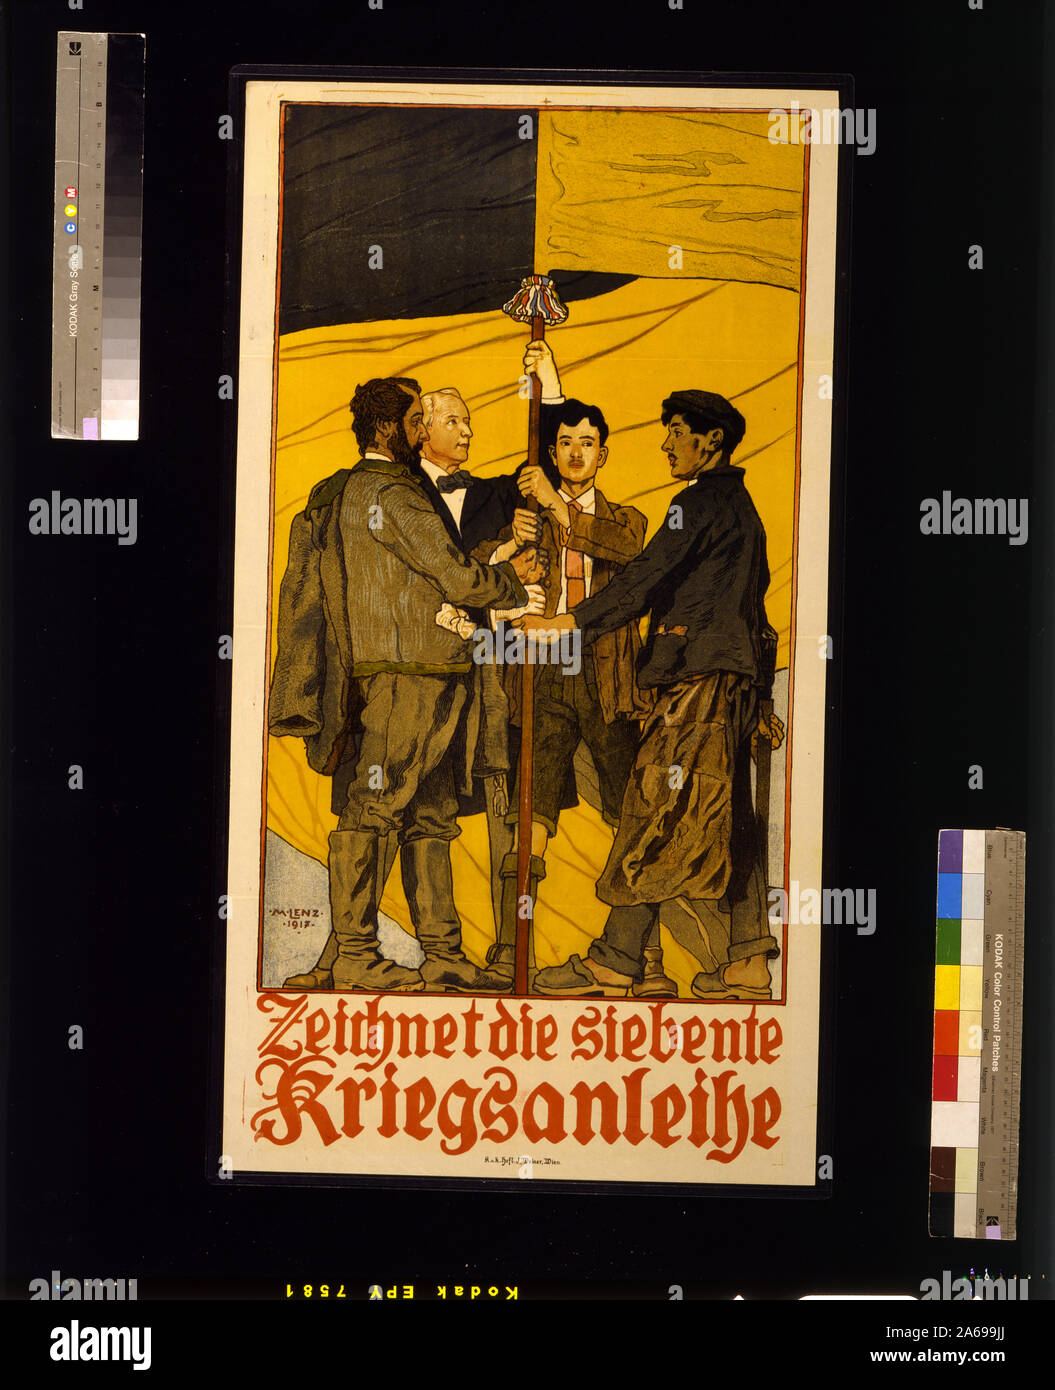 Die siebente Zeichnet Kriegsanleihe Resumen: cartel muestra a cuatro hombres, que representan diferentes clases de la sociedad austríaca - profesional, obrero, campesino, estudiante() --, sosteniendo un mástil de bandera. Texto: Suscríbase al Préstamo de Guerra 7. Foto de stock